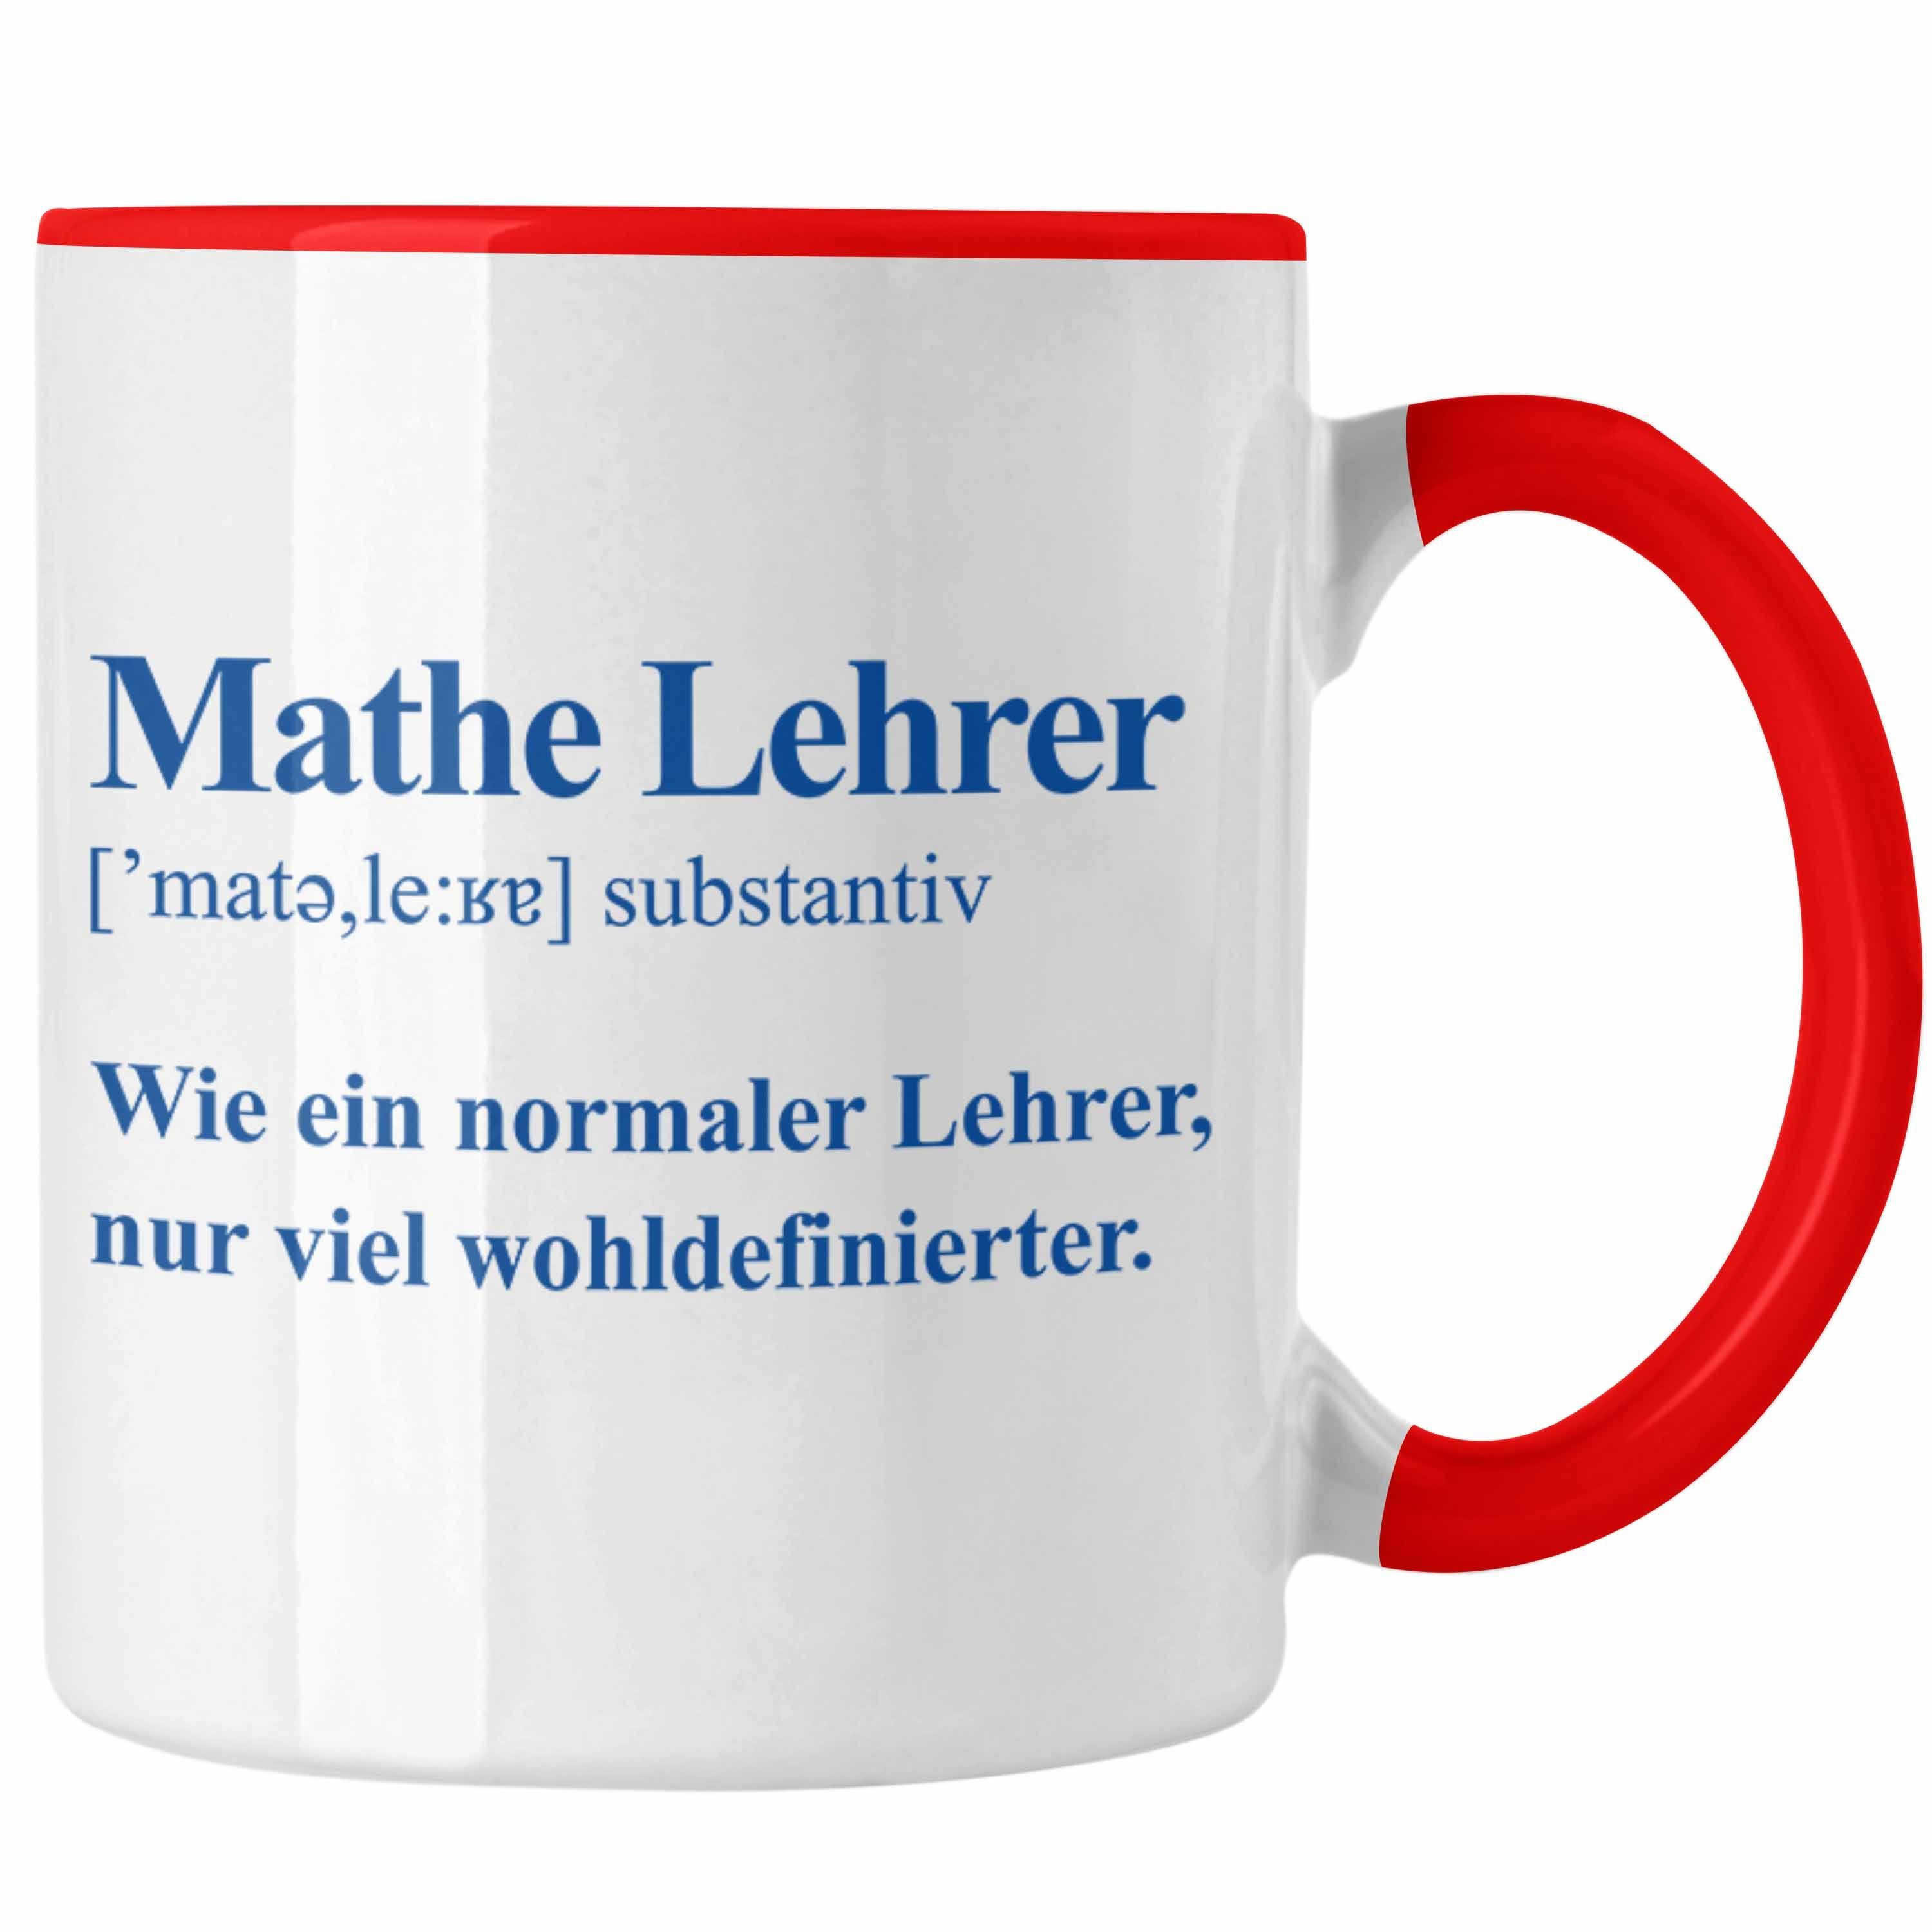 Trendation Tasse Trendation - Mathematiker Lehrer Mathe mit Geschenk Lustig Spruch Kaffeetasse Tassen Mathelehrer Tasse Rot